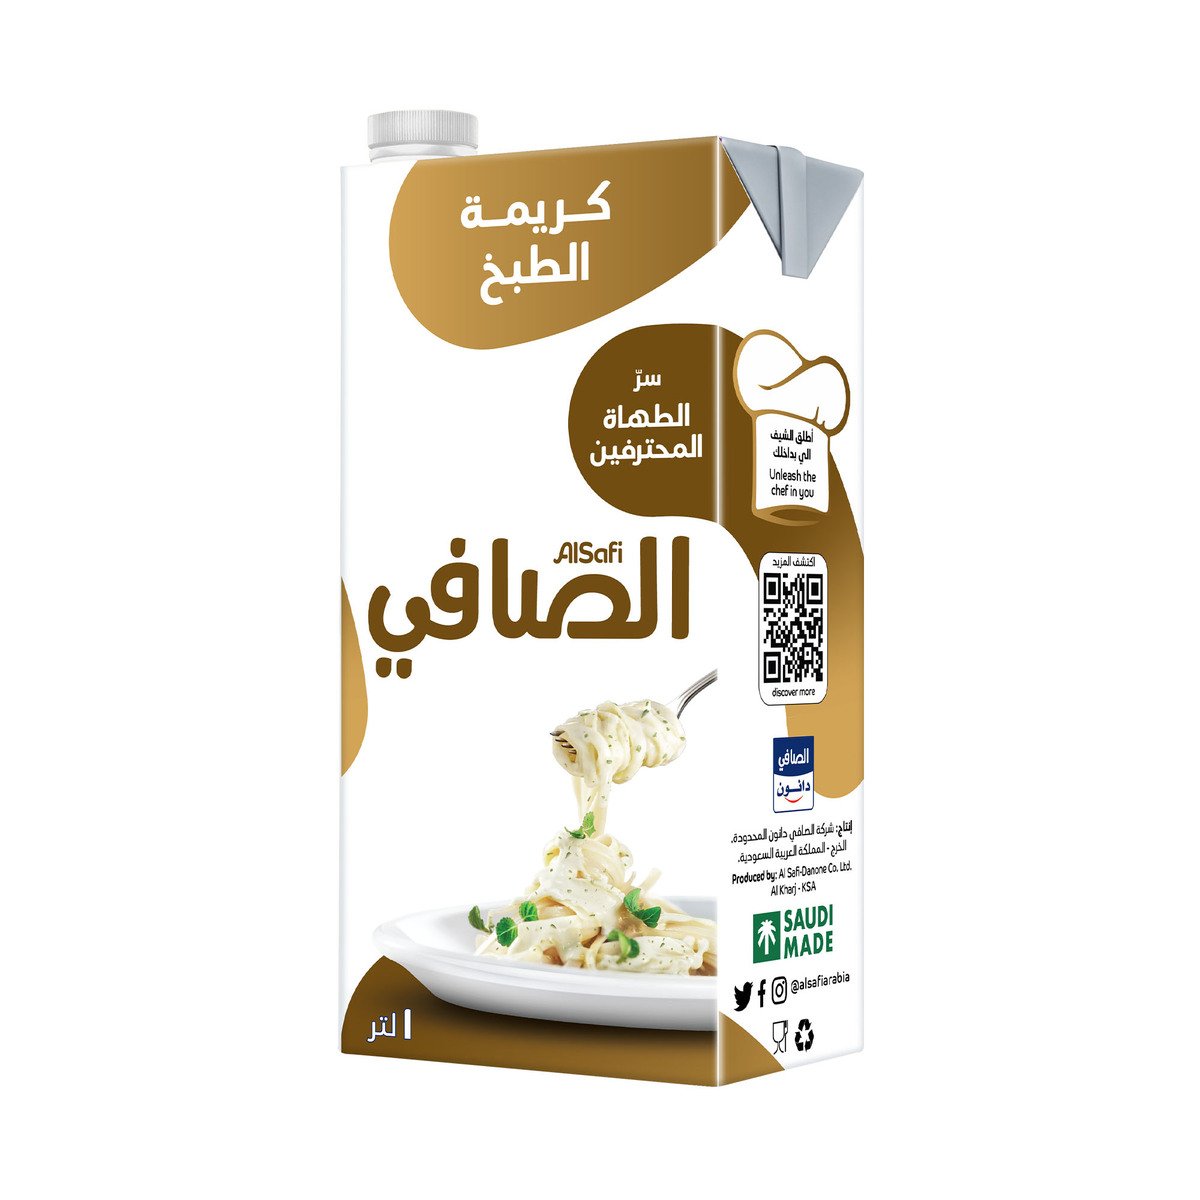 Al Safi Cooking Cream, 1 Litre